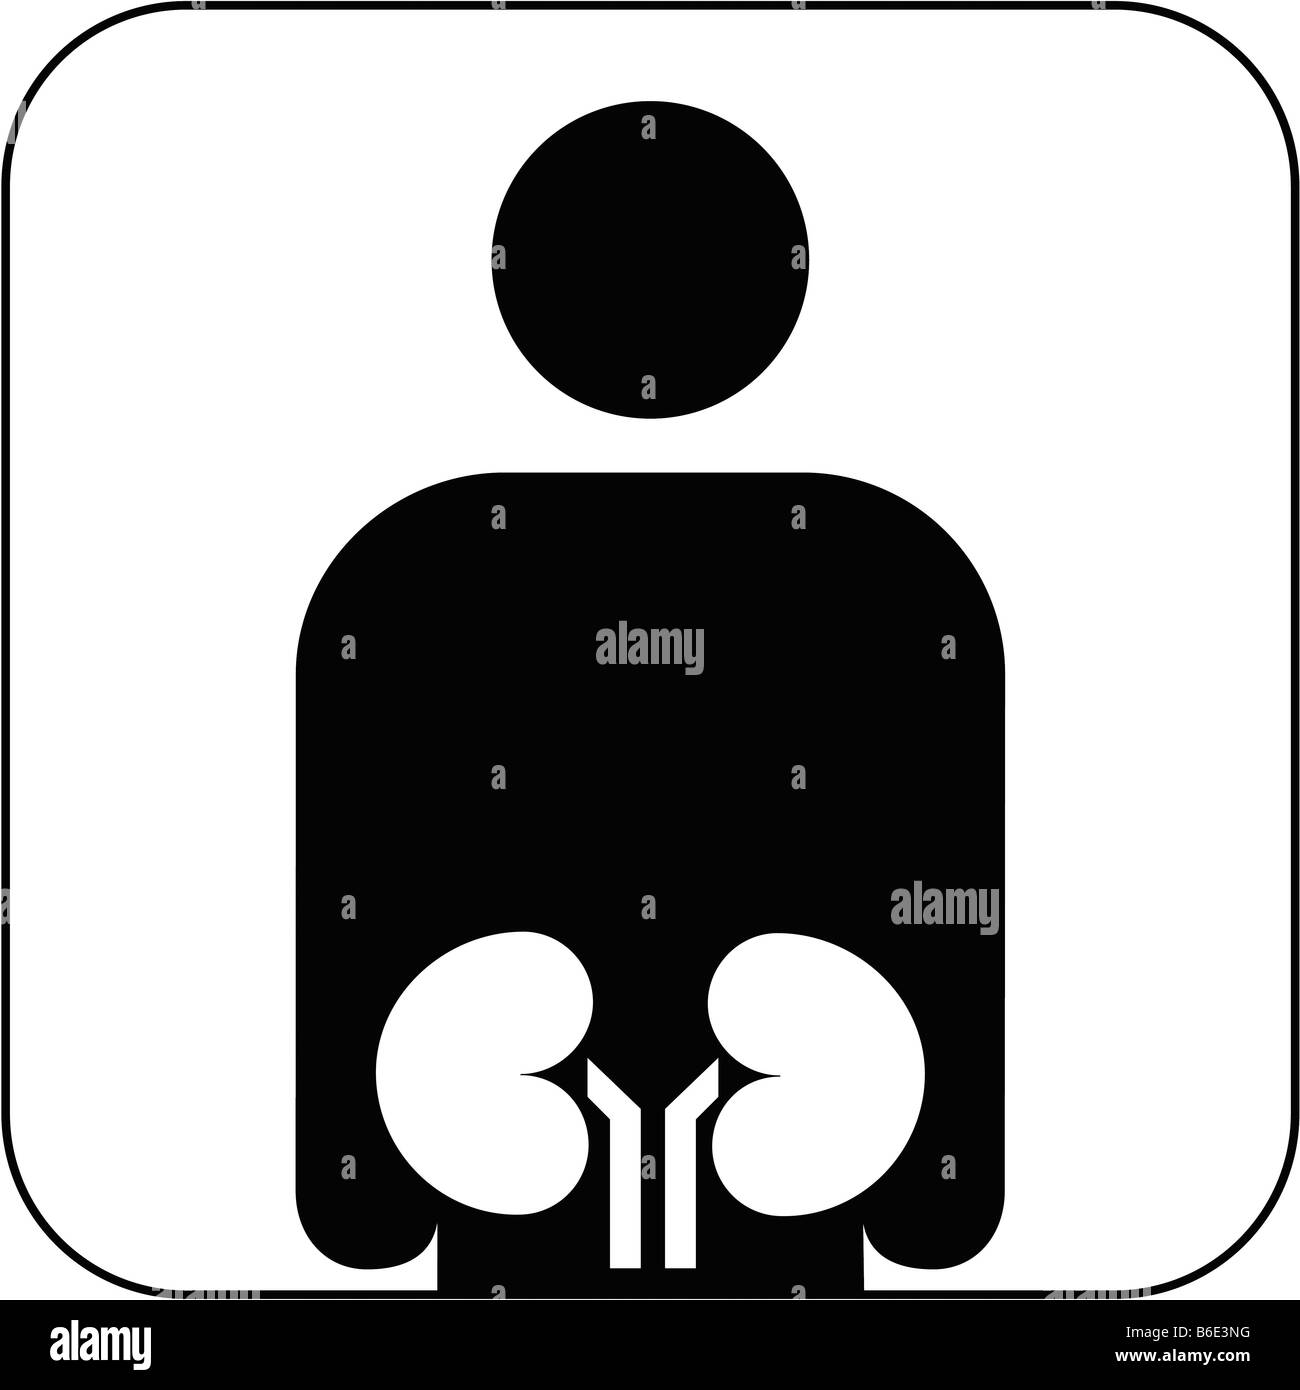 Urology symbol against white background Stock Photo